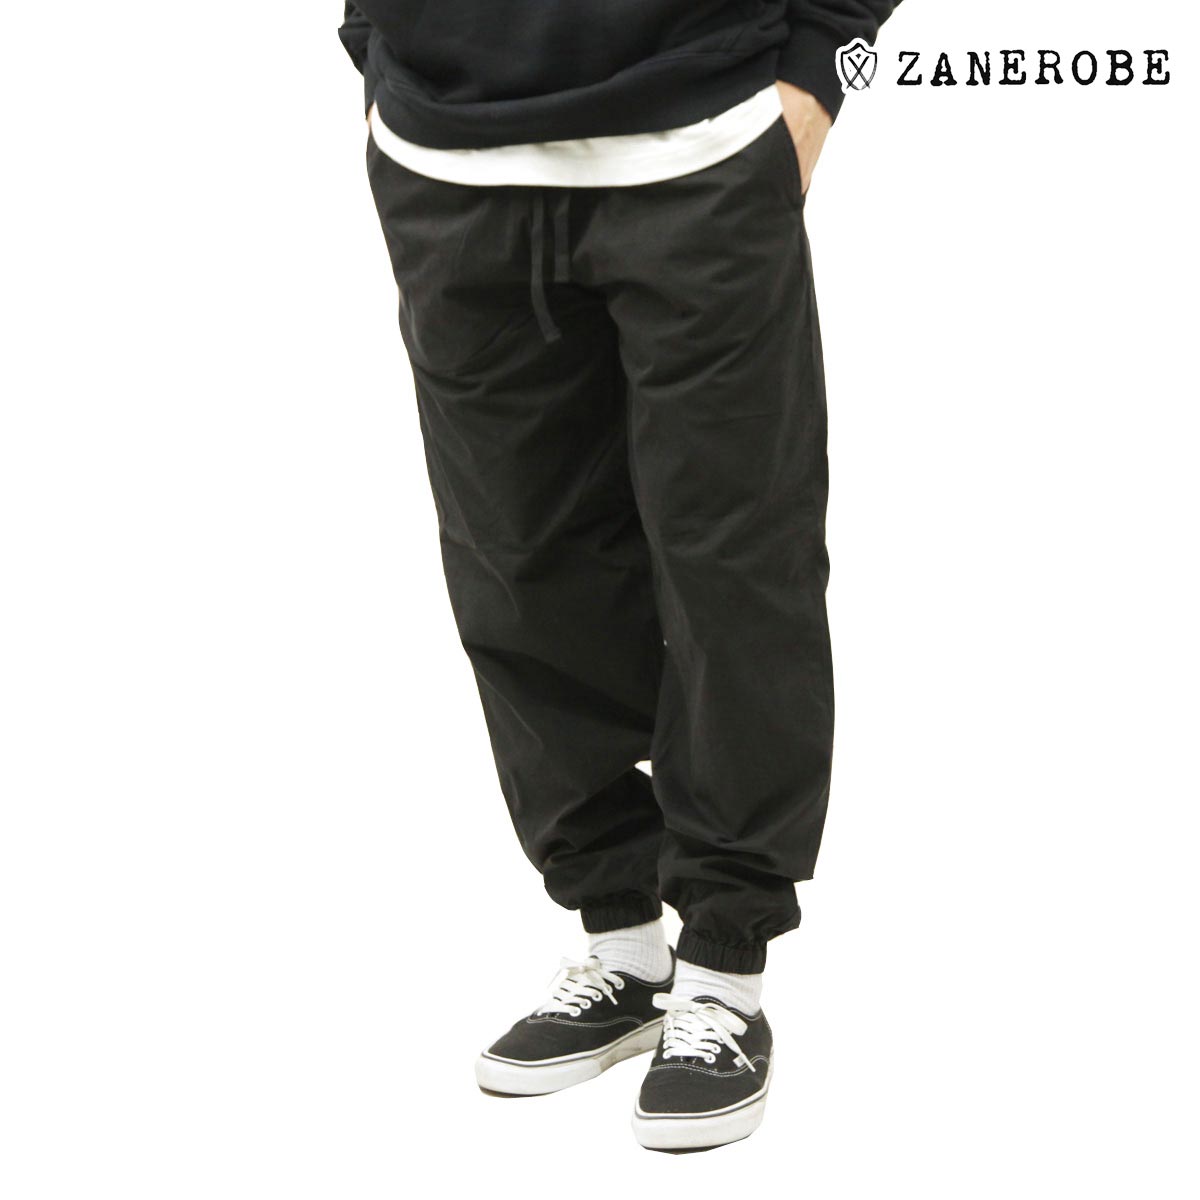 ゼンローブ ジョガーパンツ メンズ 正規販売店 ZANEROBE ボトムス ゼファー ZEPHYR JOGGER PANTS 715-DEL GD BLACK 父の日 プレゼント ラッピング